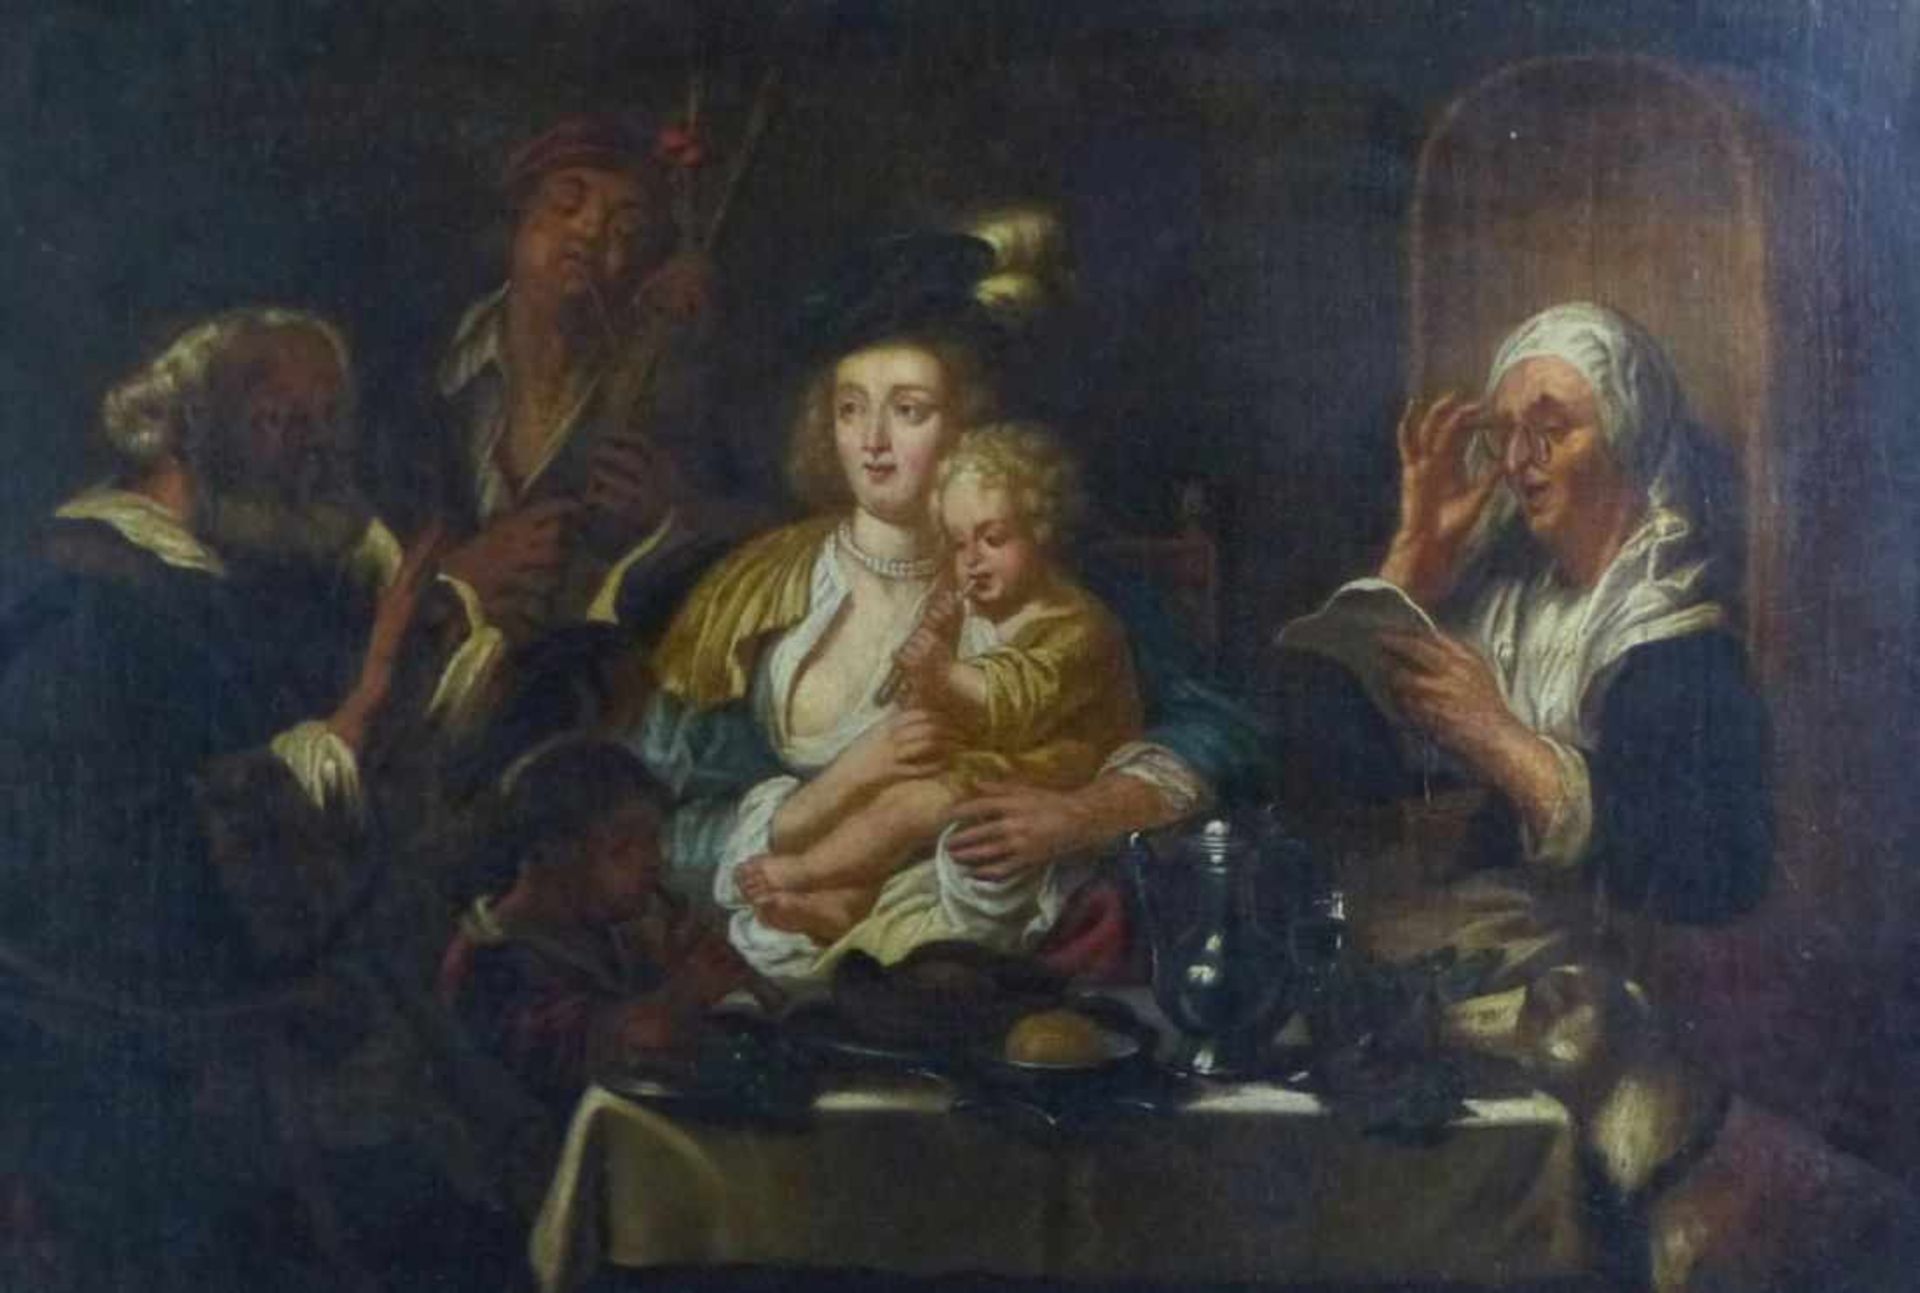 Jordaens, Jacob - Kopie nach Interieur mit musizierender Großfamilie (Antwerpen 1593-1678 ebd.) Öl/